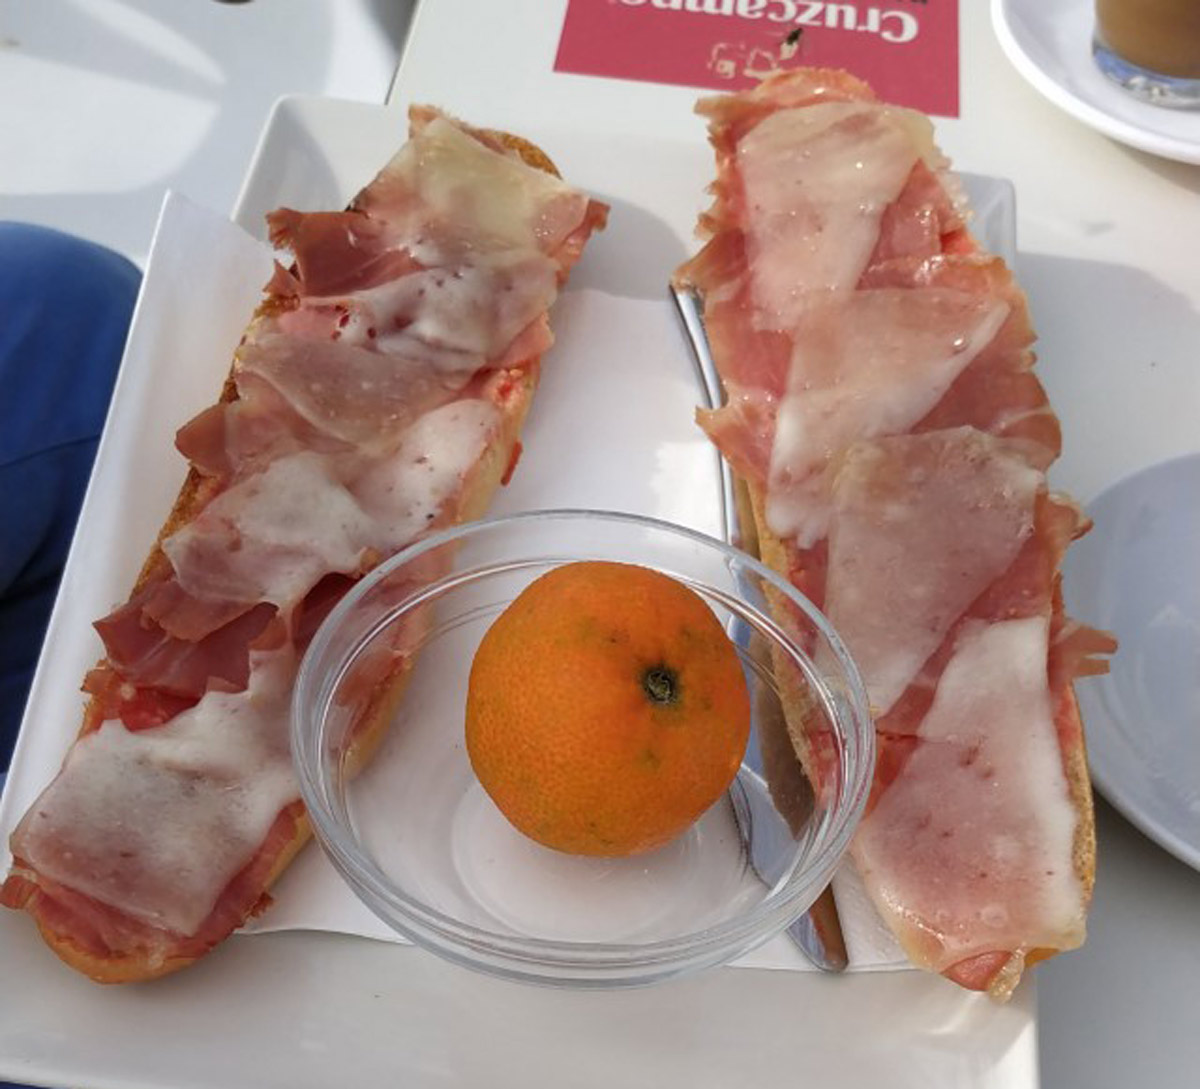 Le petit dejeuner à l’Espagnole – pan con tomate & churros